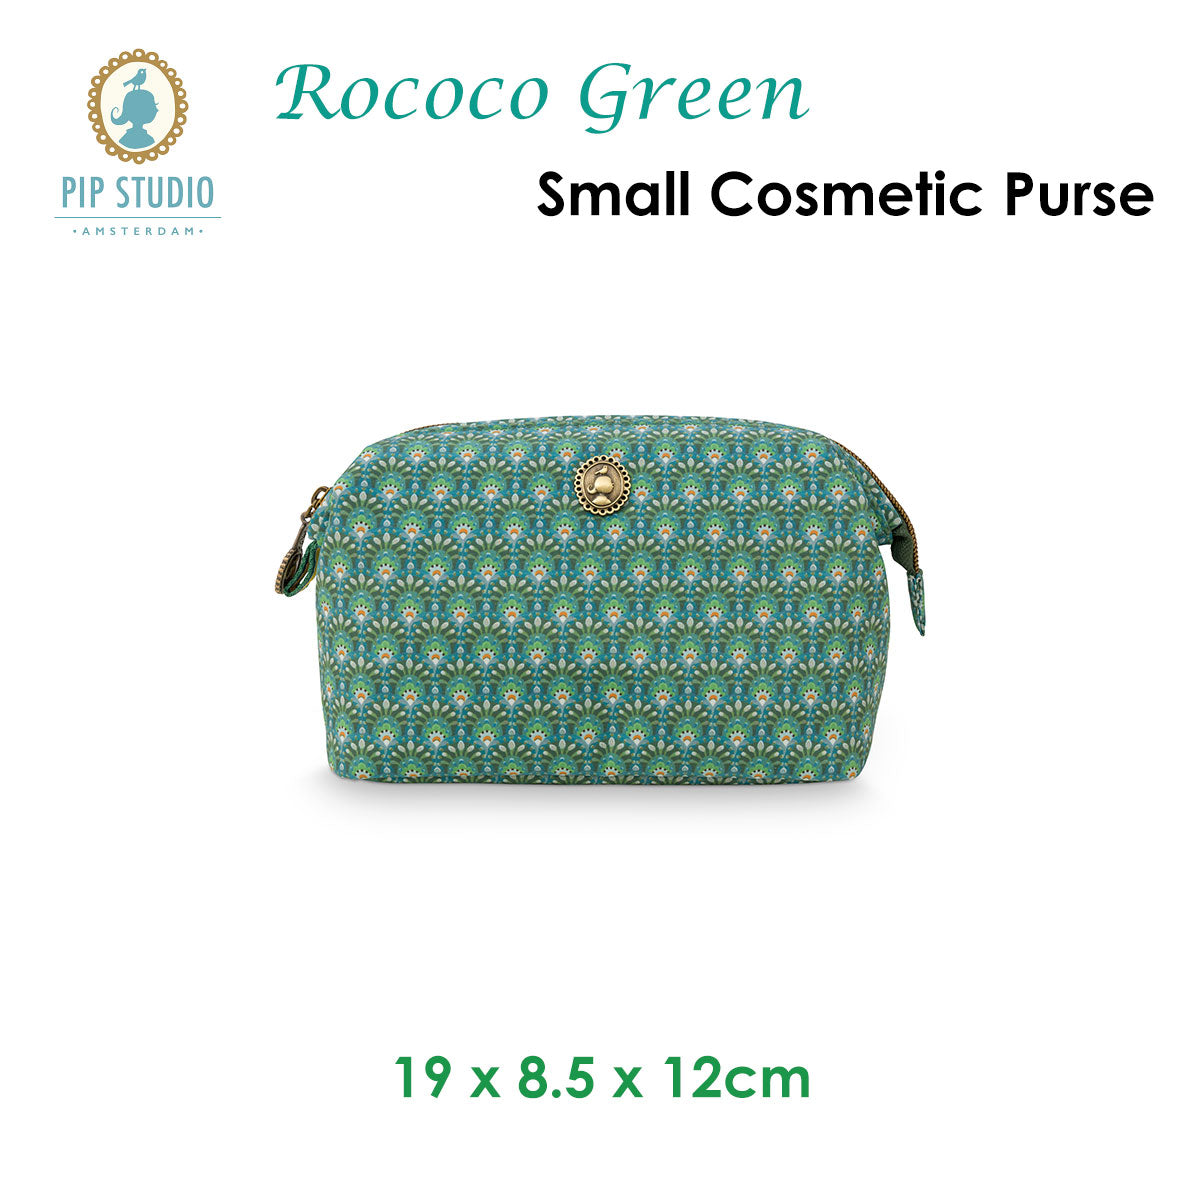 PIP Studio Rococo Green Small Cosmetic Purse